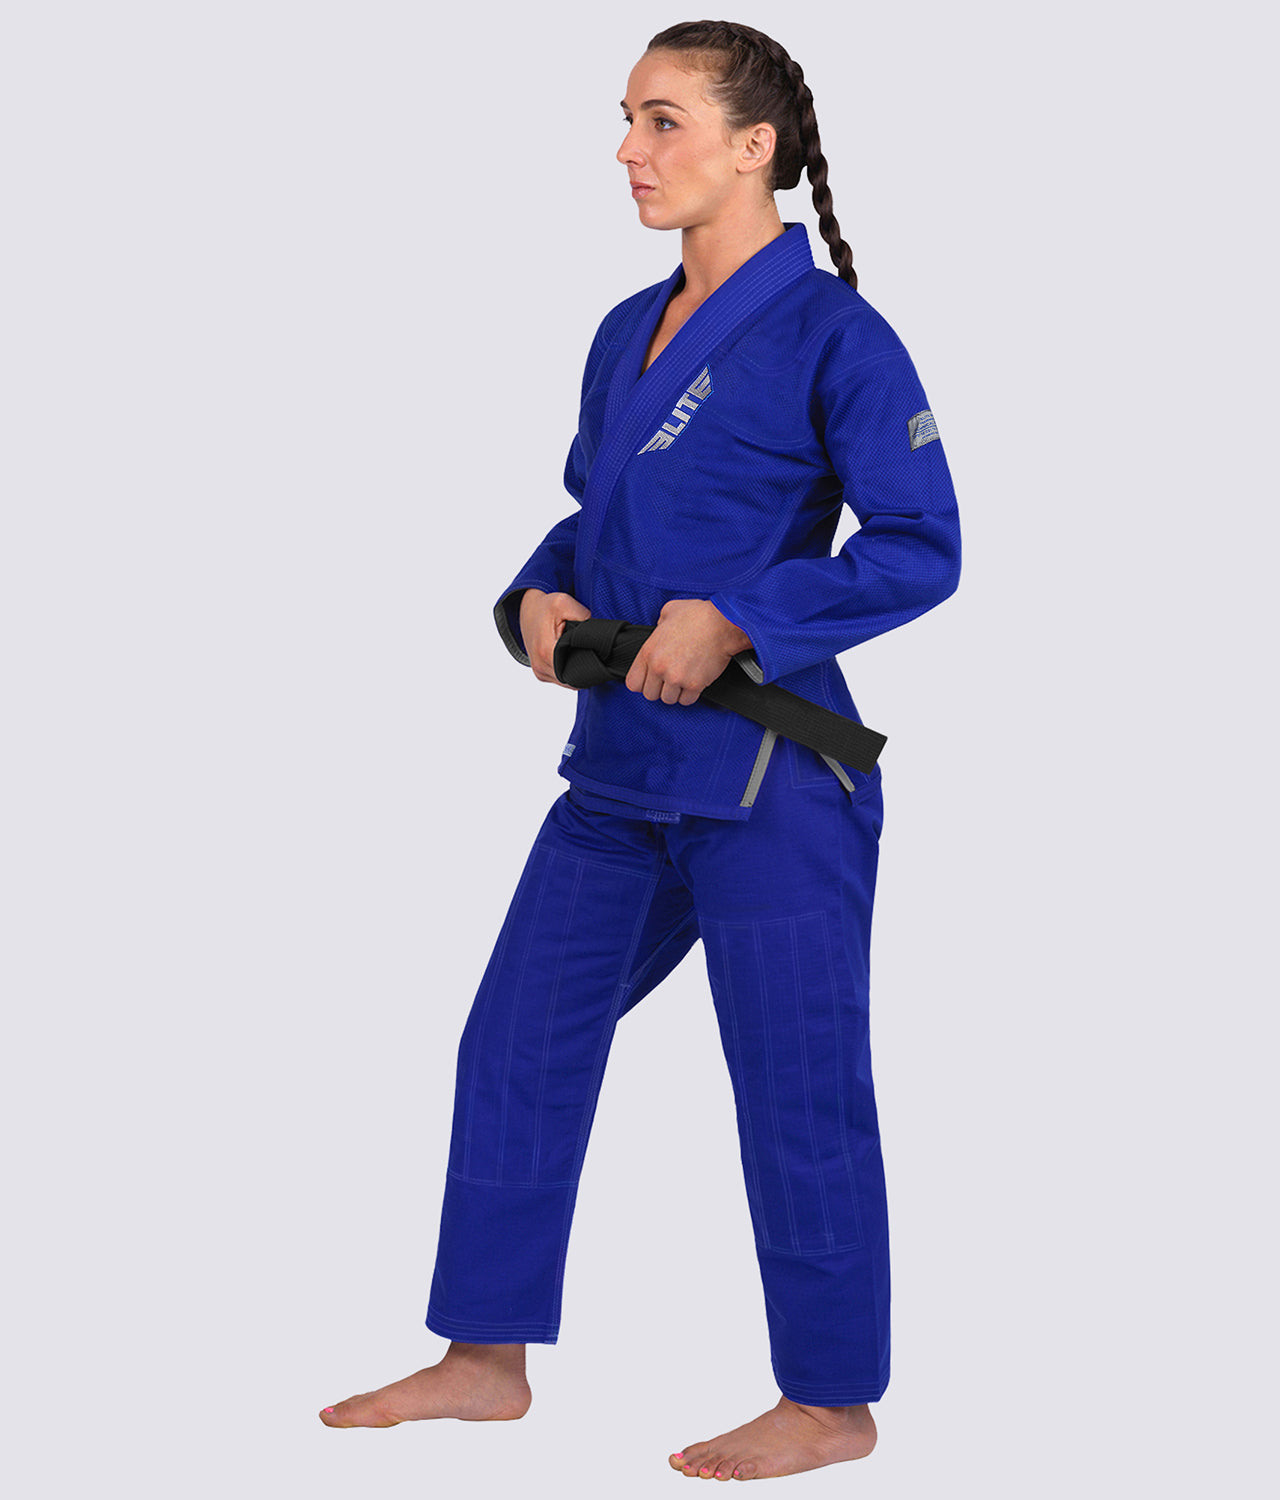 Elite Sports Women's Core Blue Brazilian Jiu Jitsu BJJ Gi Side View